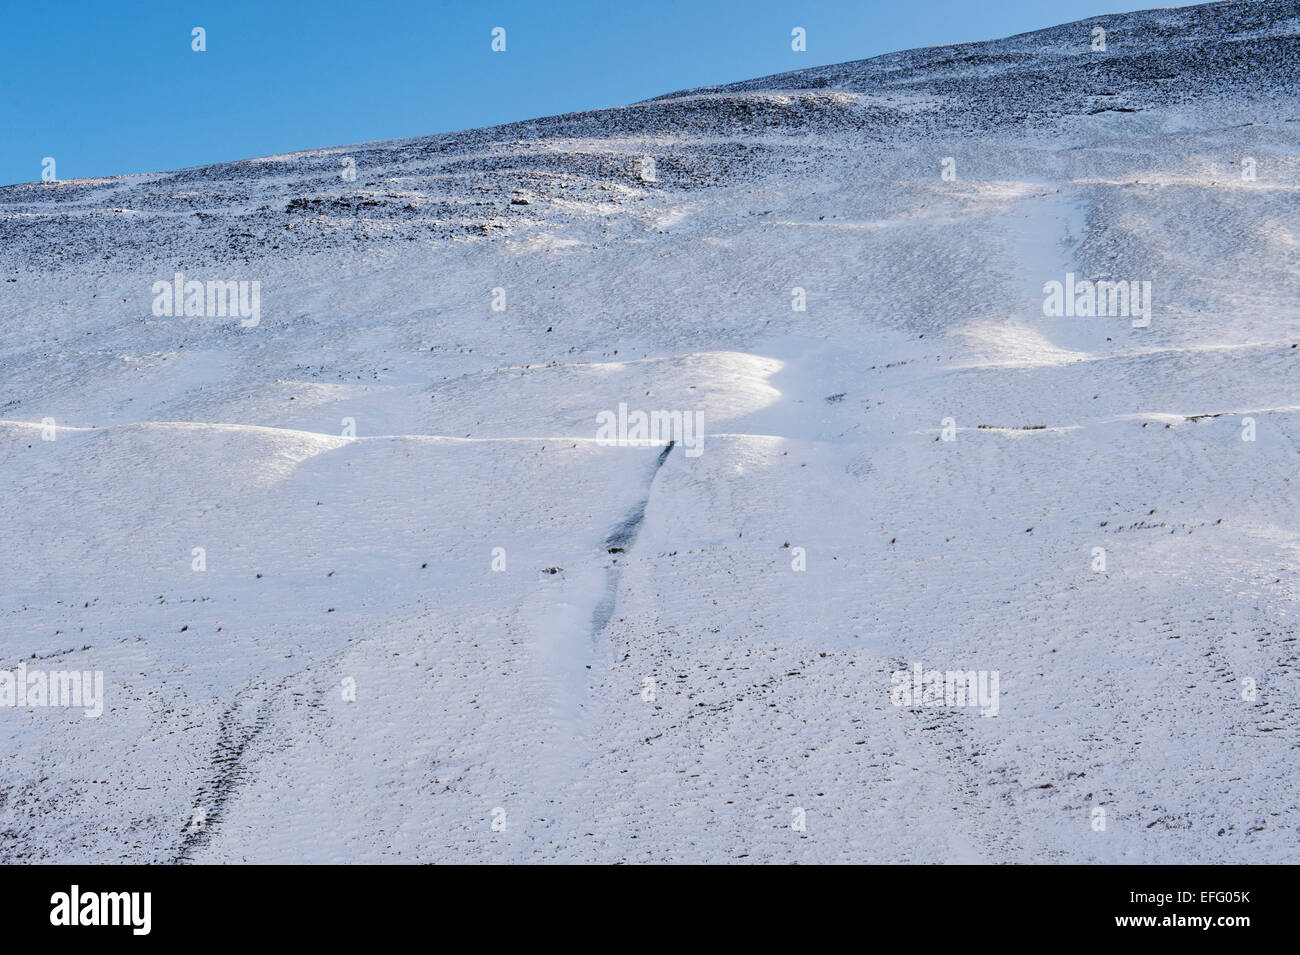 Coperta di neve Yarrow valley mountains in inverno. Scottish Borders. Scozia Foto Stock